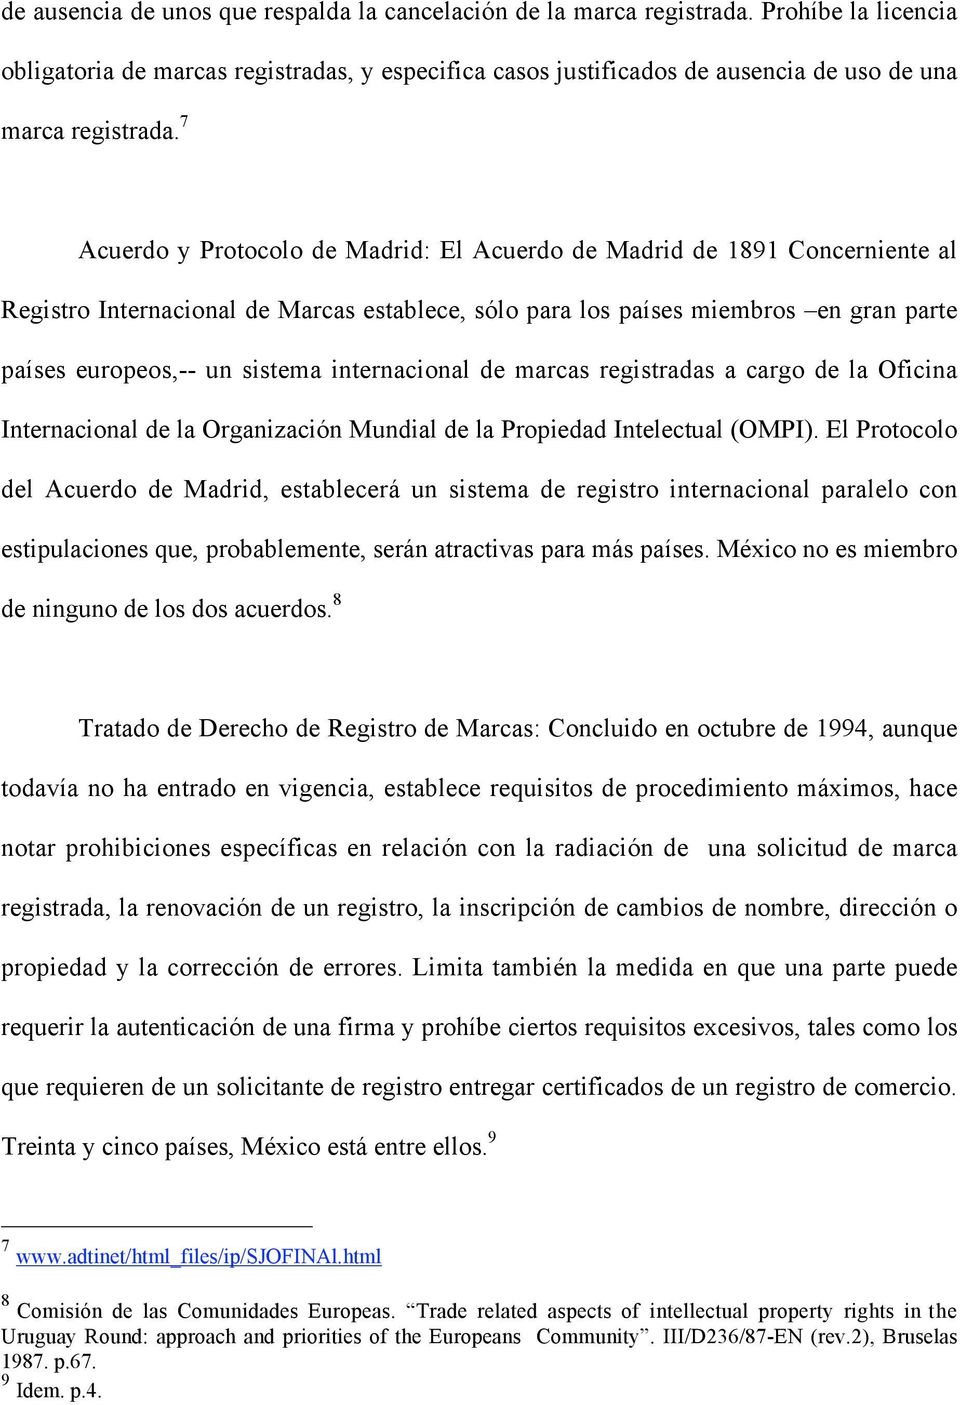 7 Acuerdo y Protocolo de Madrid: El Acuerdo de Madrid de 1891 Concerniente al Registro Internacional de Marcas establece, sólo para los países miembros en gran parte países europeos,-- un sistema